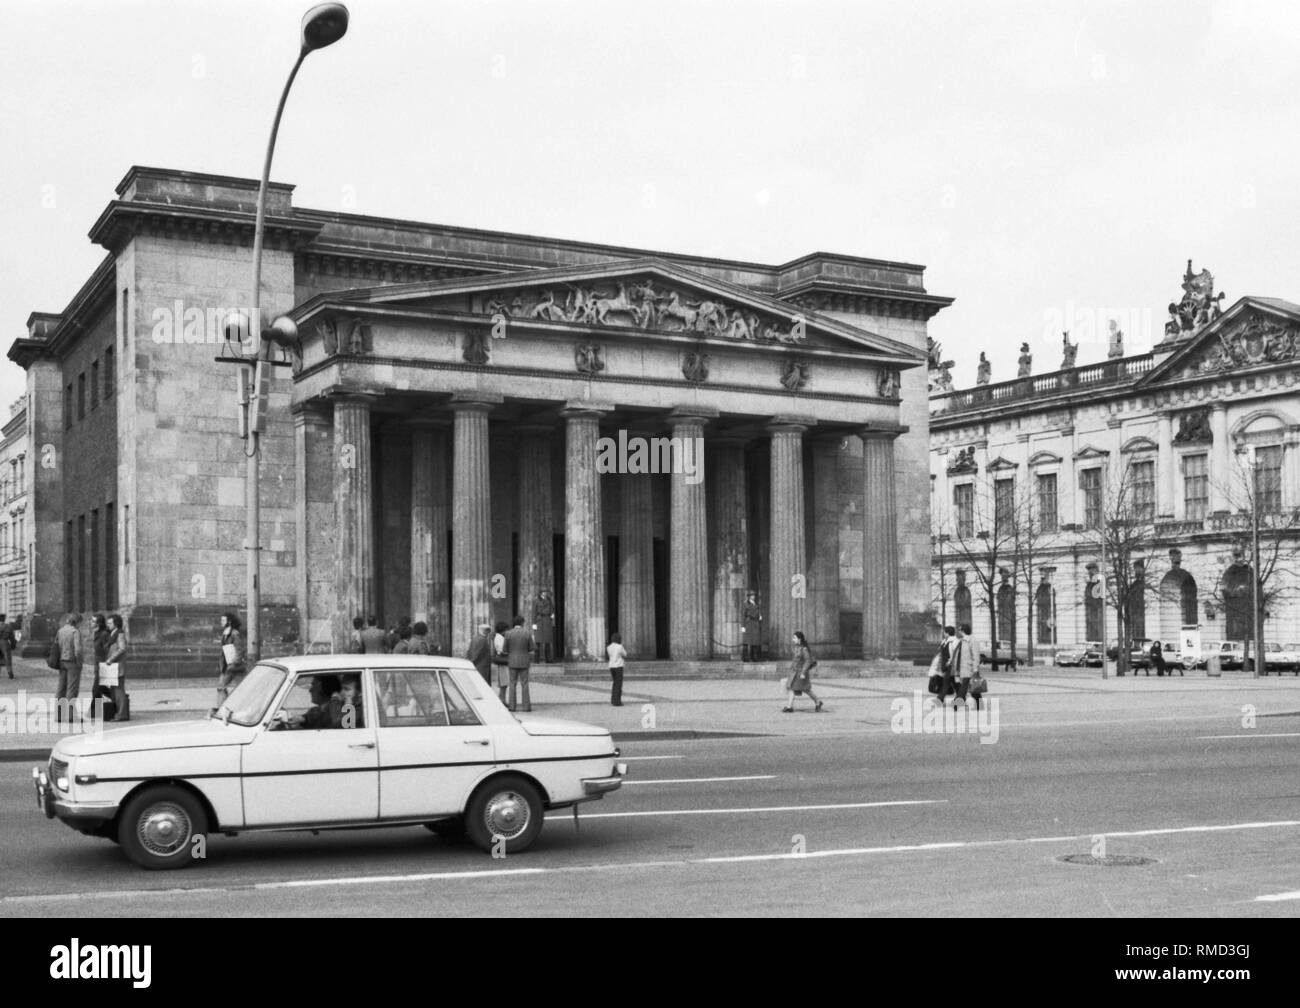 Neue Wache sur le boulevard "Unter den Linden" à Berlin Est avec les gardiens de l'Armée Populaire Nationale (NVA) de la RDA. Photo du 15 mars 1976. Banque D'Images